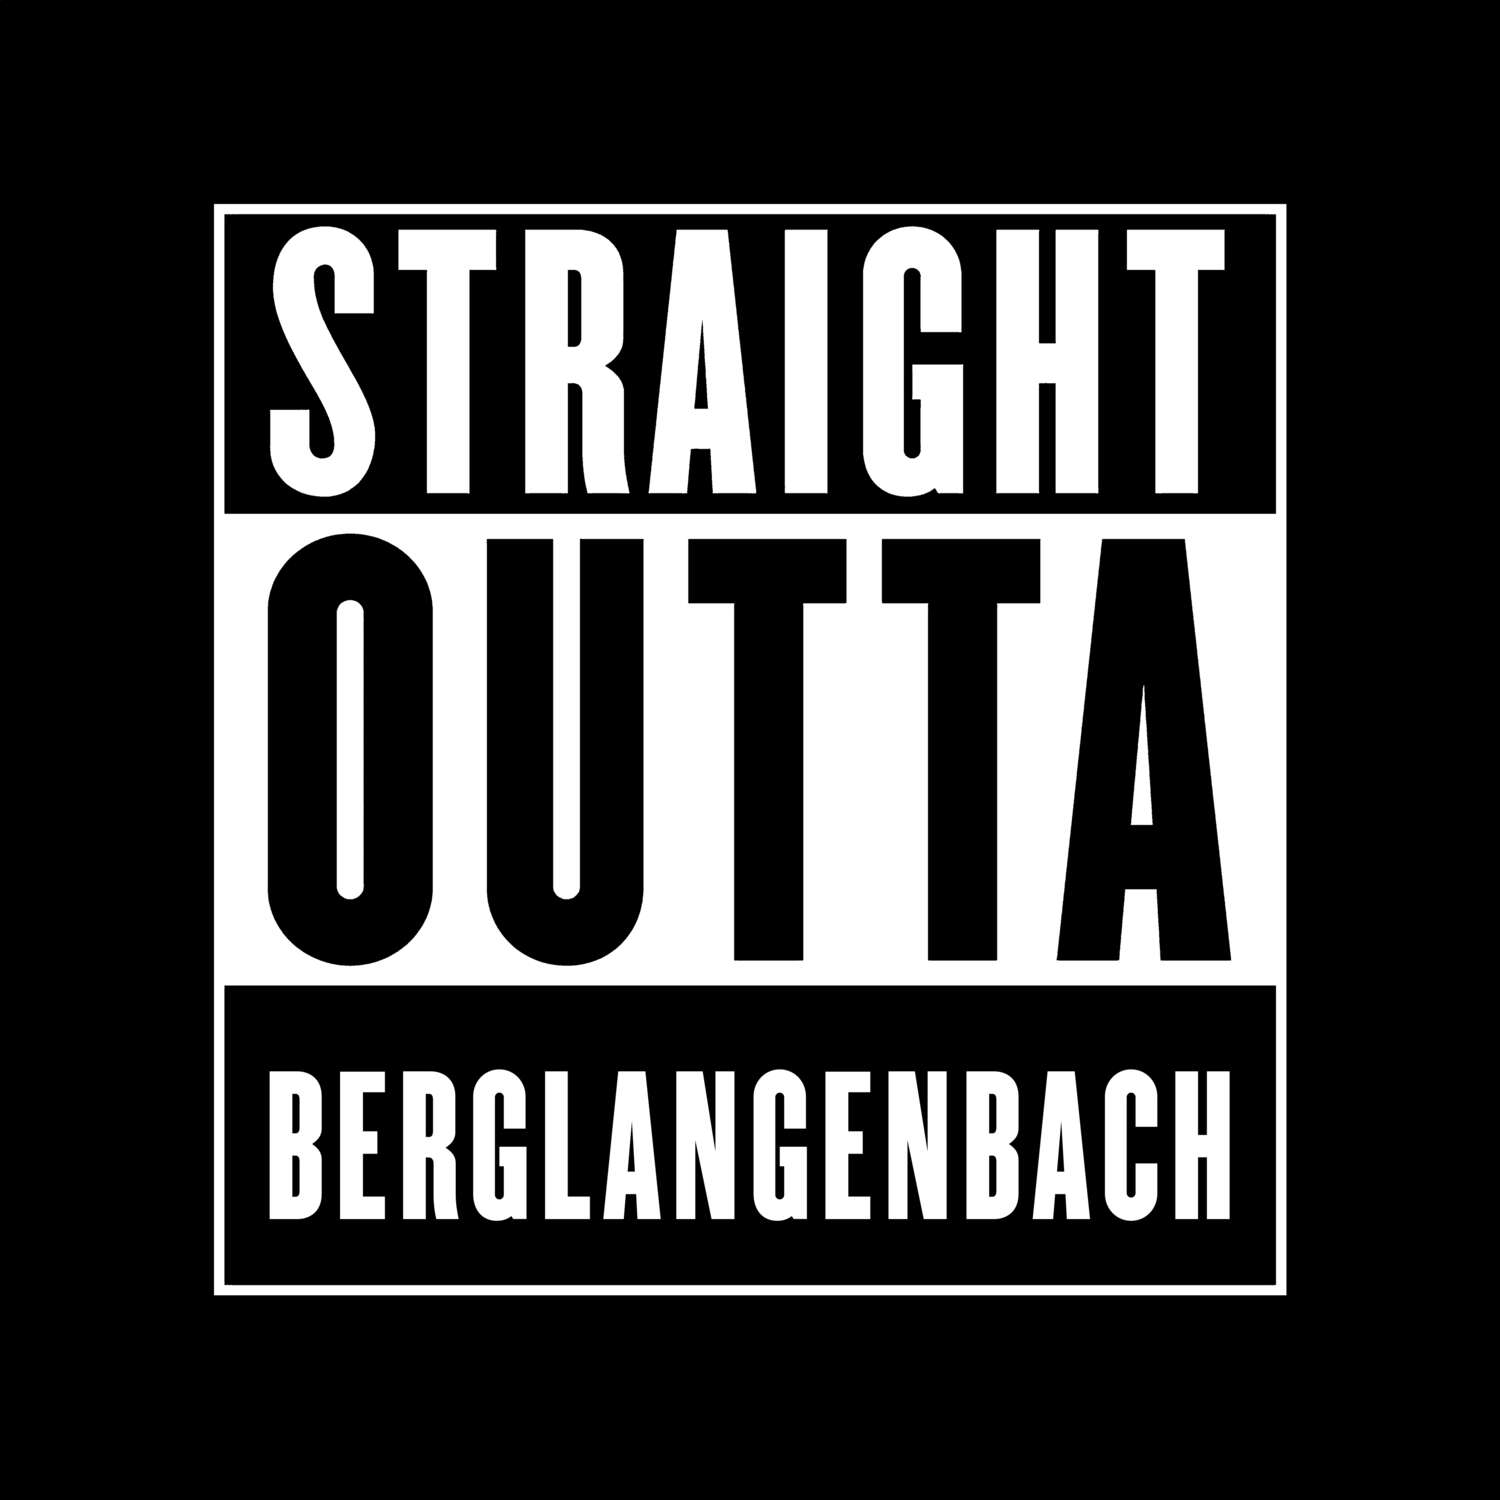 Berglangenbach T-Shirt »Straight Outta«